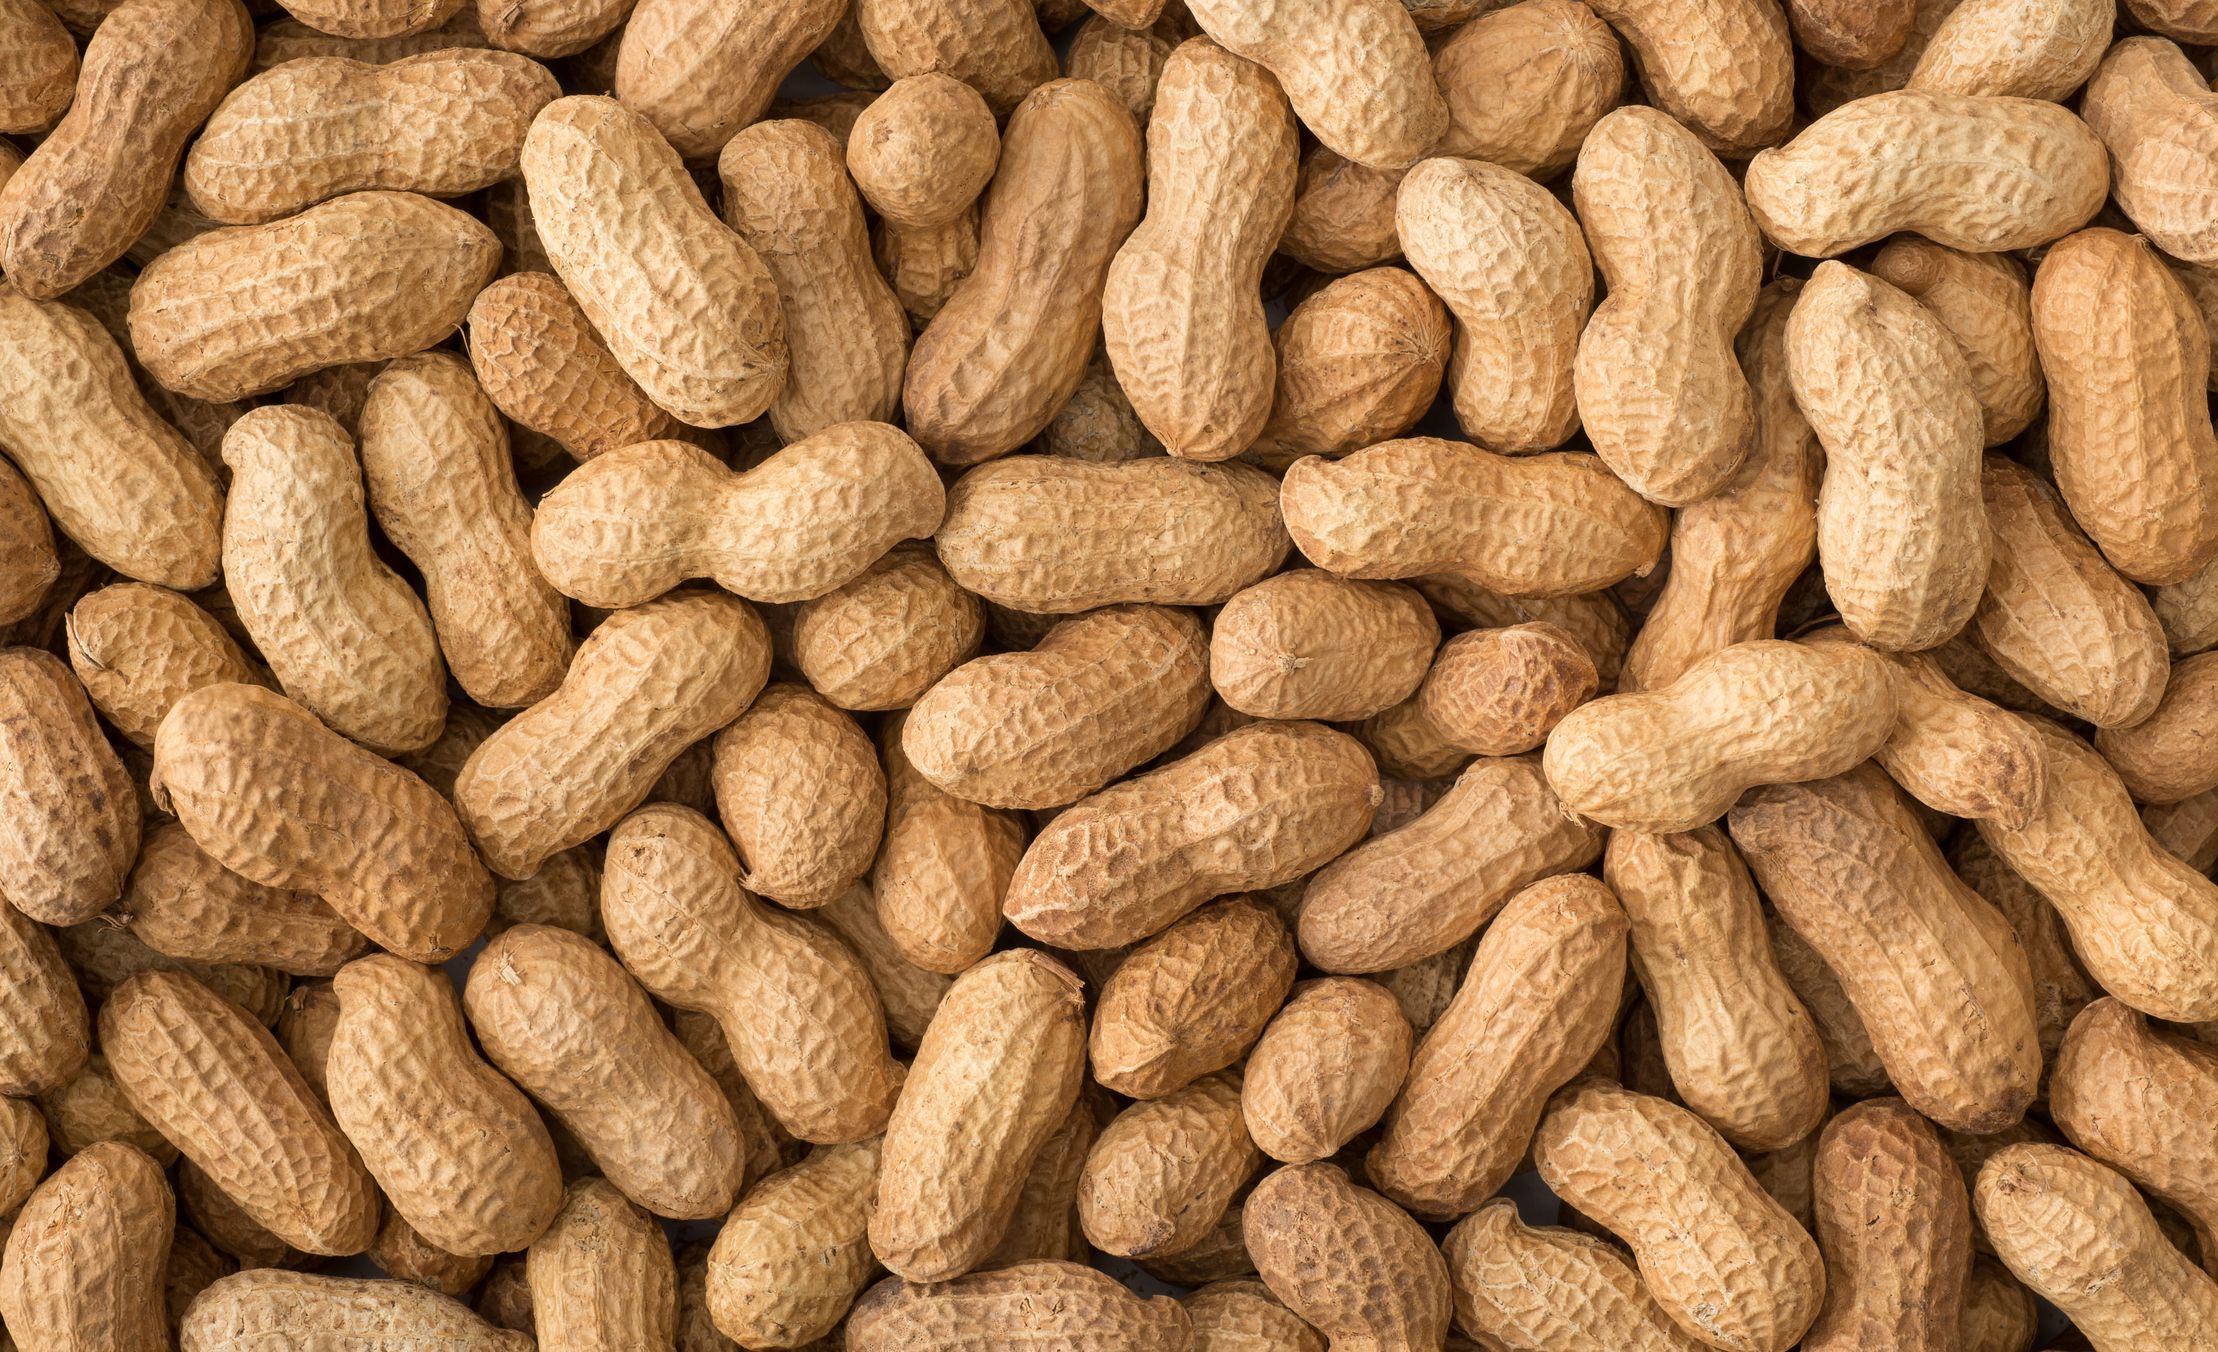 a peanut